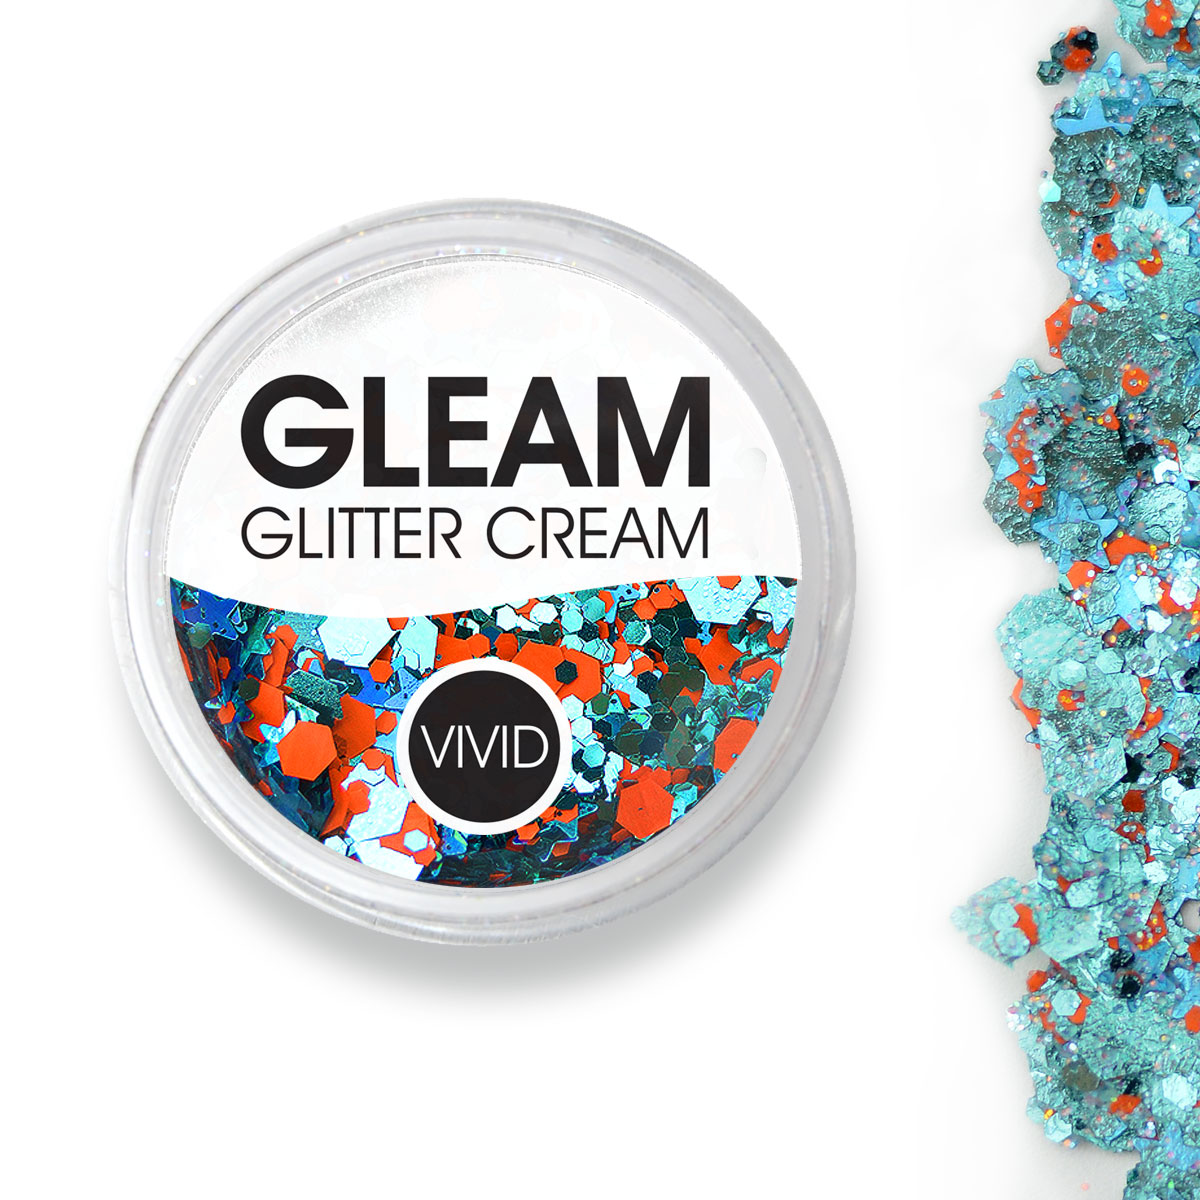 Energy - Gleam "Gameday" Glitter Cream